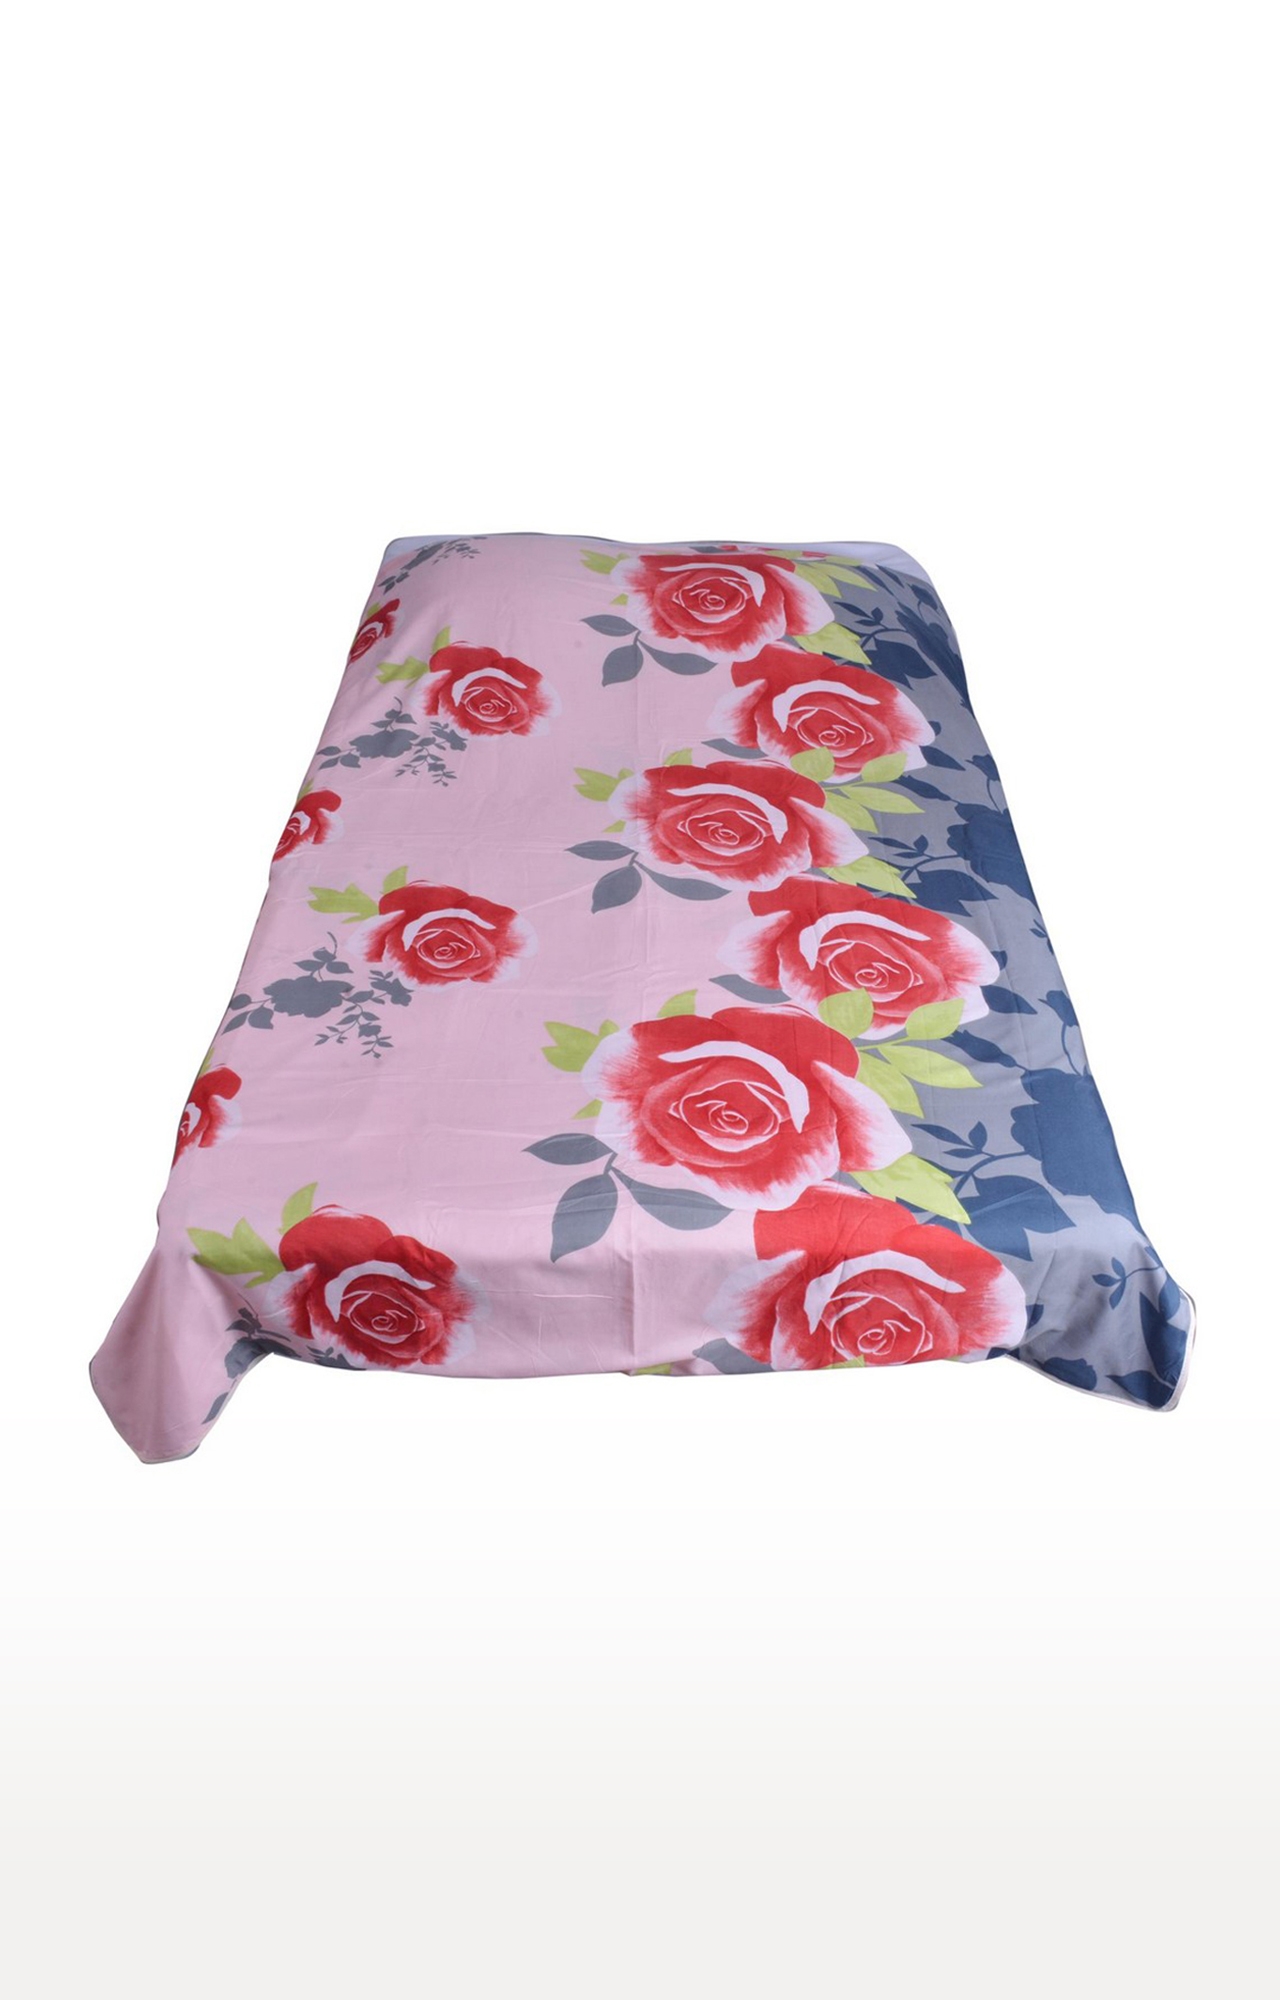 V Brown | Rose Flower Printed Cotton 3 Layer Single Bed Quilt Dohar 1